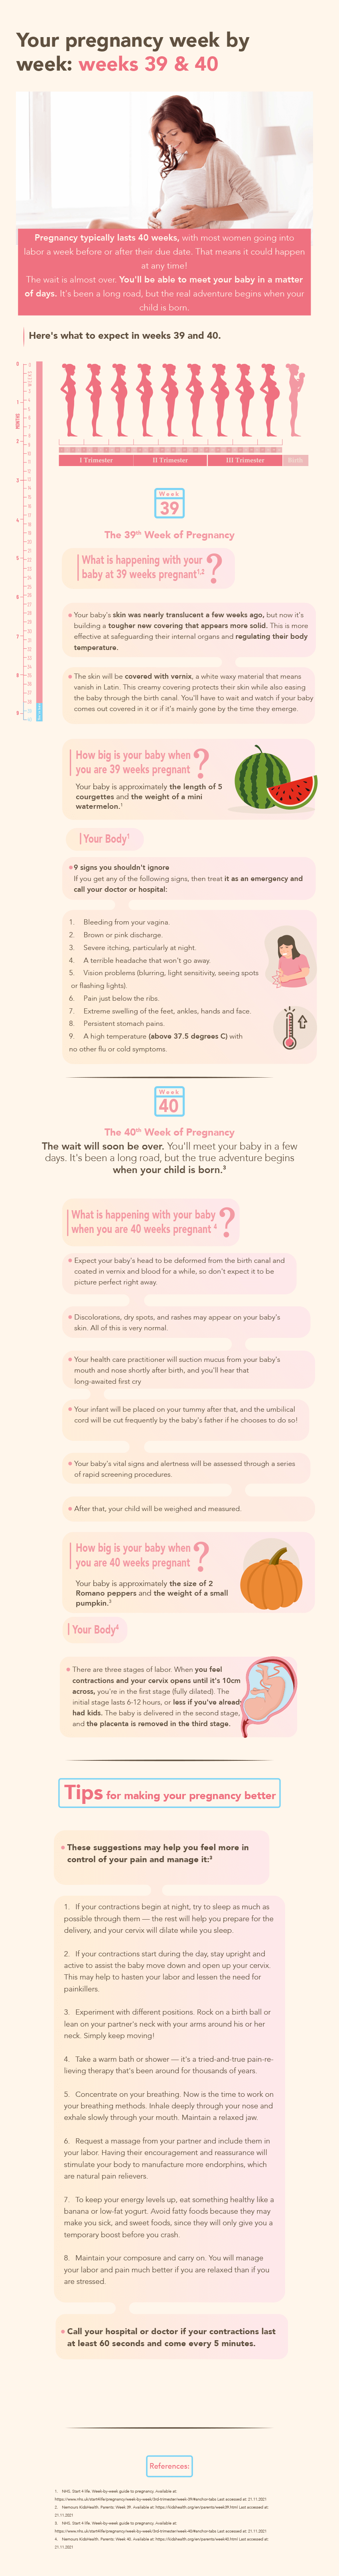 Pregnancy weeks 39&40